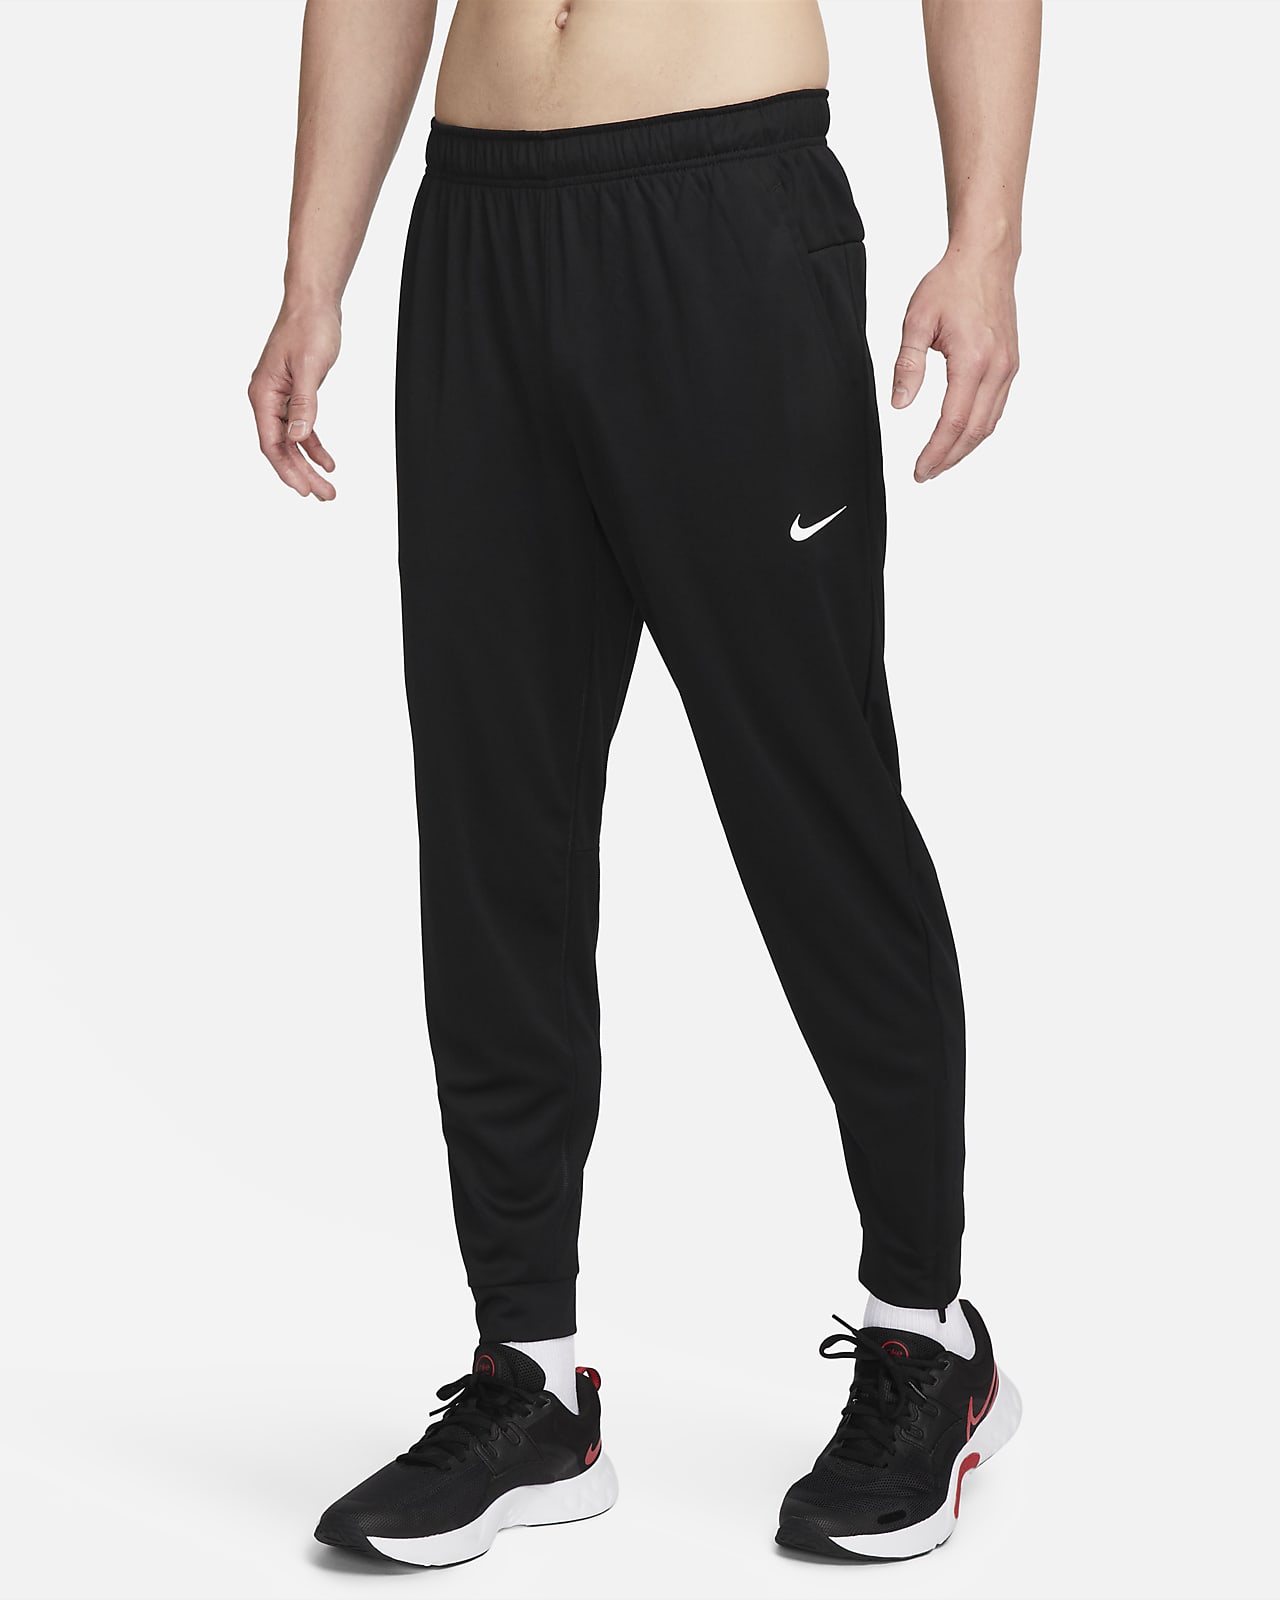 Nike Totality vielseitige Hose mit schmal zulaufender Passform und für Herren